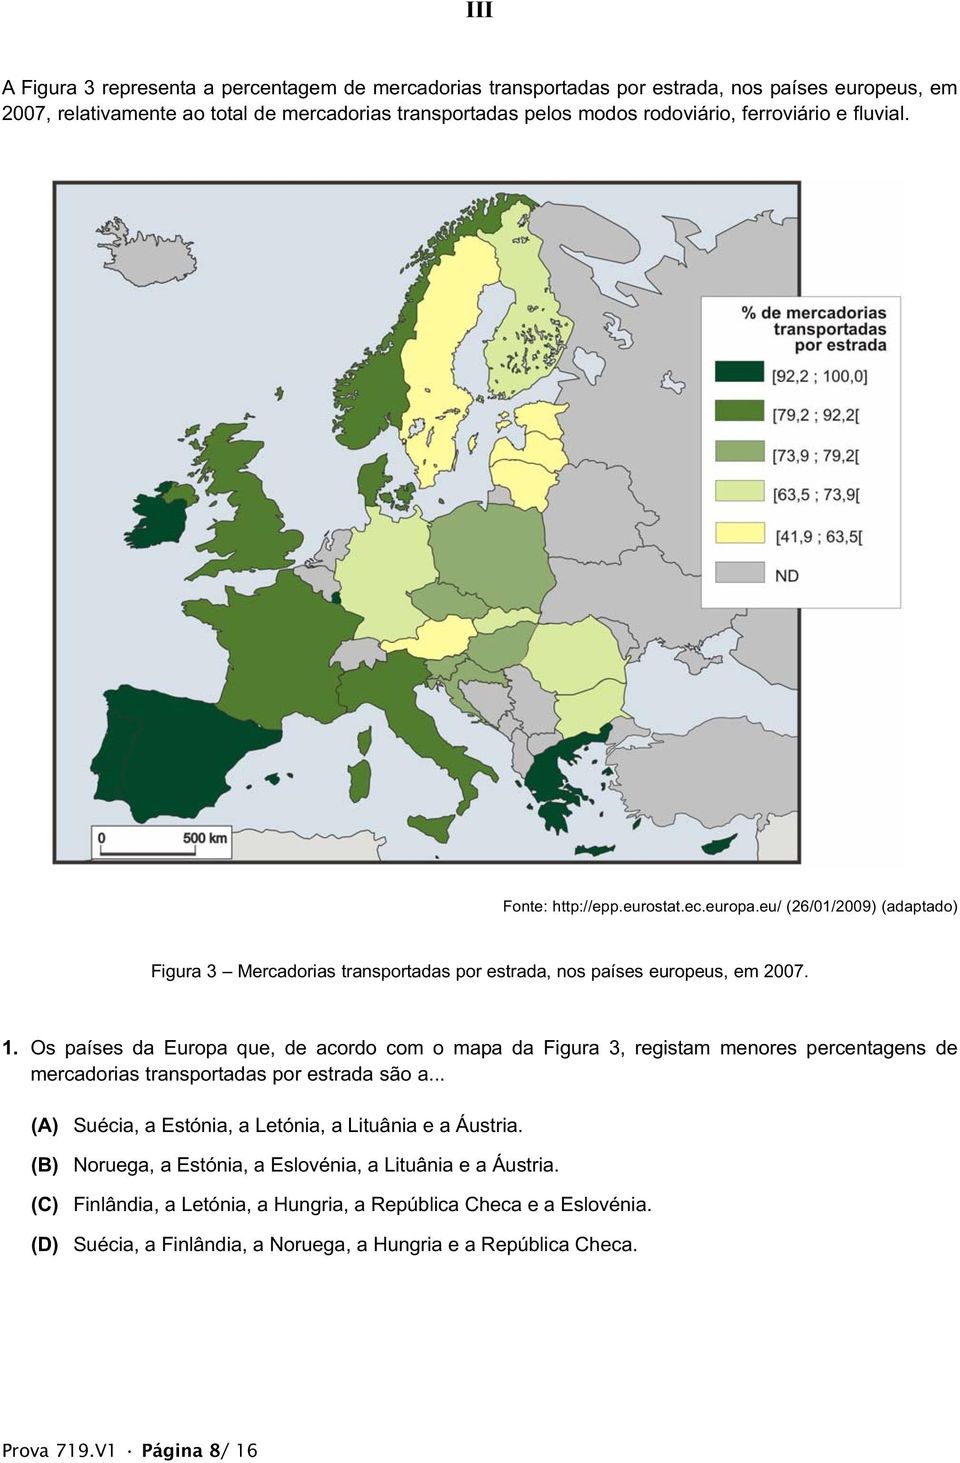 Os países da Europa que, de acordo com o mapa da Figura 3, registam menores percentagens de mercadorias transportadas por estrada são a... (A) Suécia, a Estónia, a Letónia, a Lituânia e a Áustria.